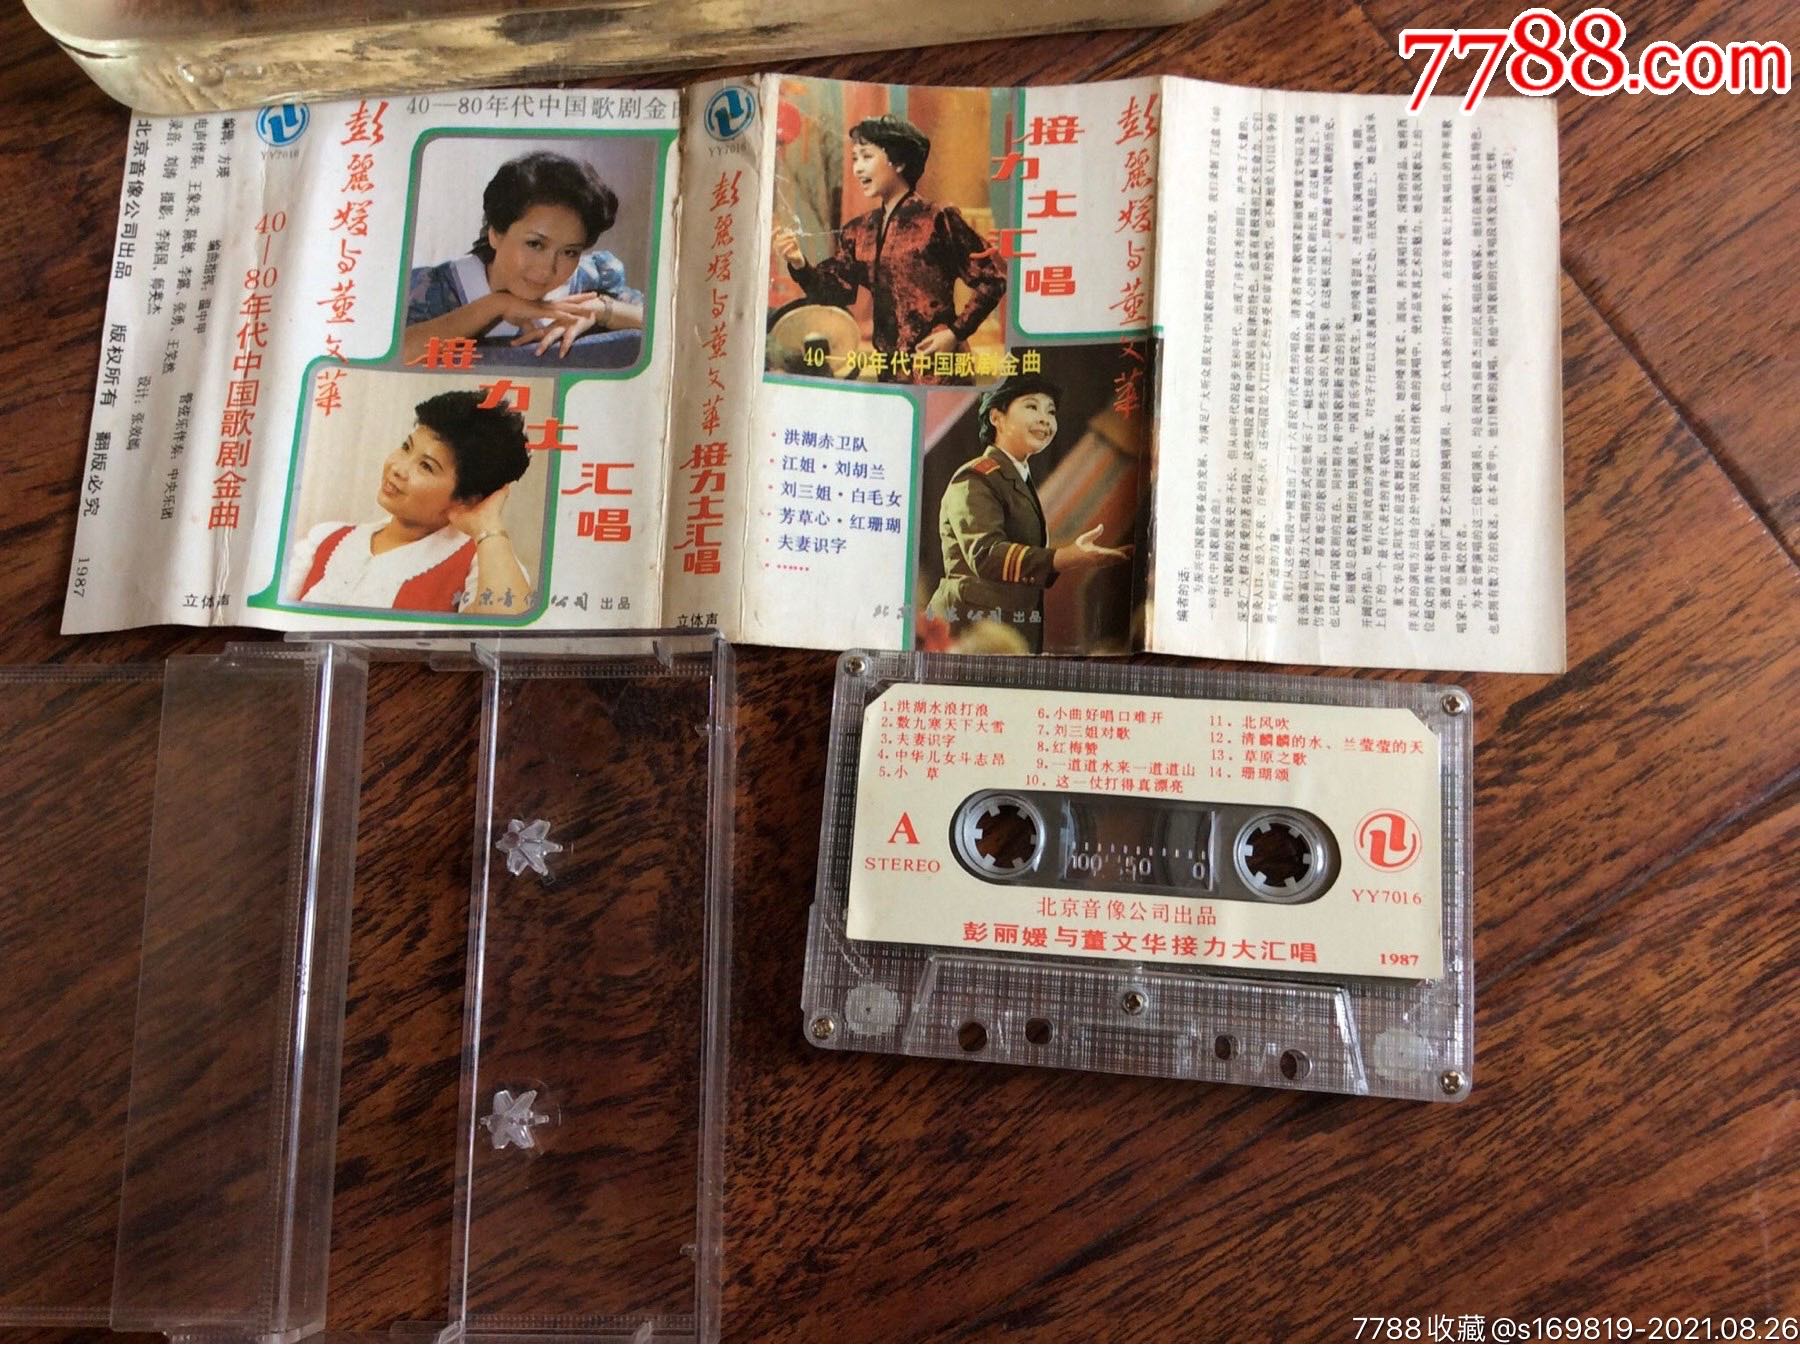 磁带,40-80年代中国歌剧金曲